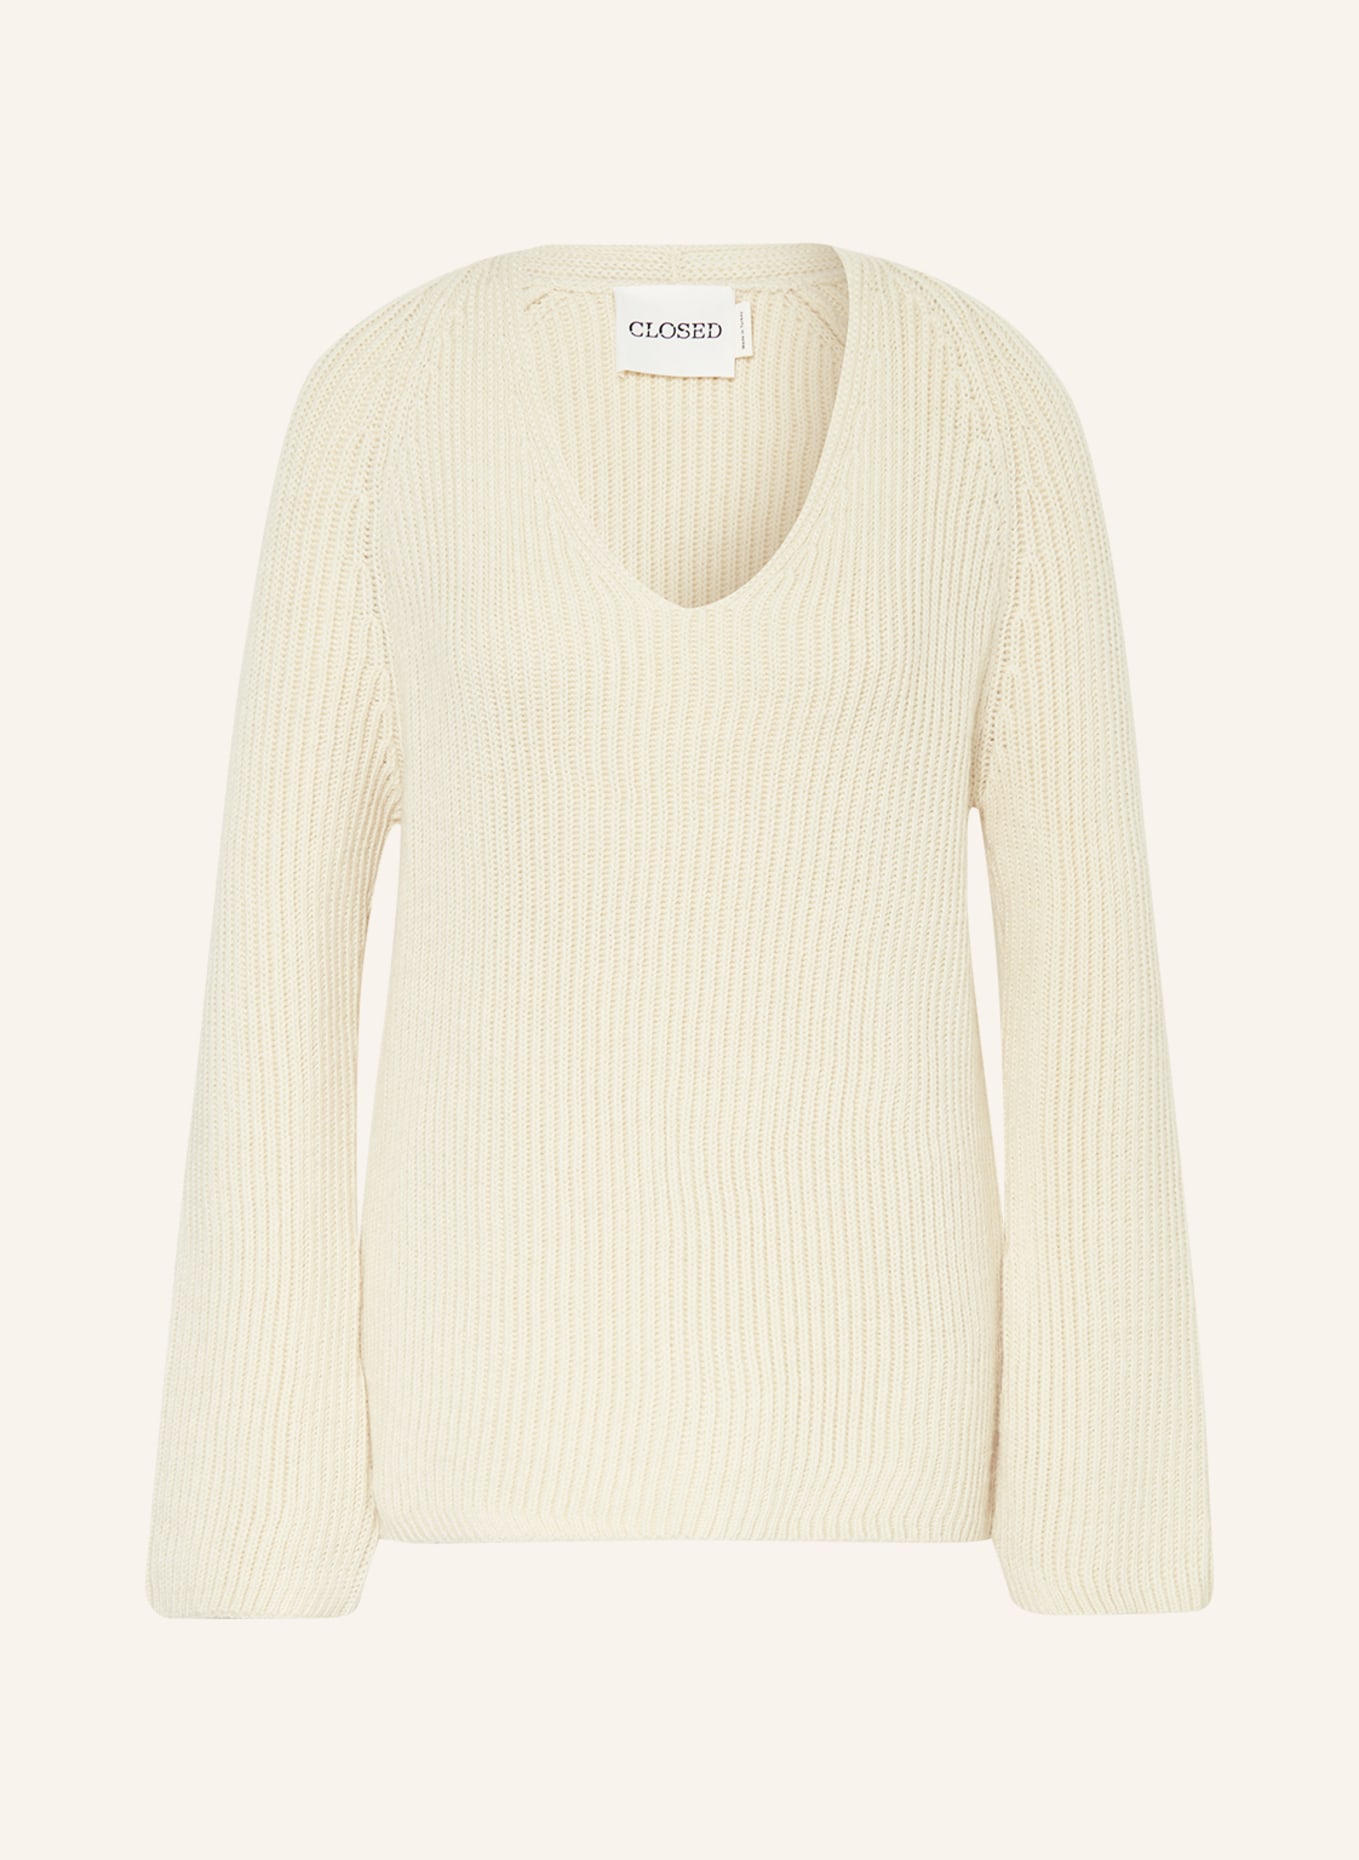 CLOSED Sweater with alpaca, Color: ECRU (Image 1)